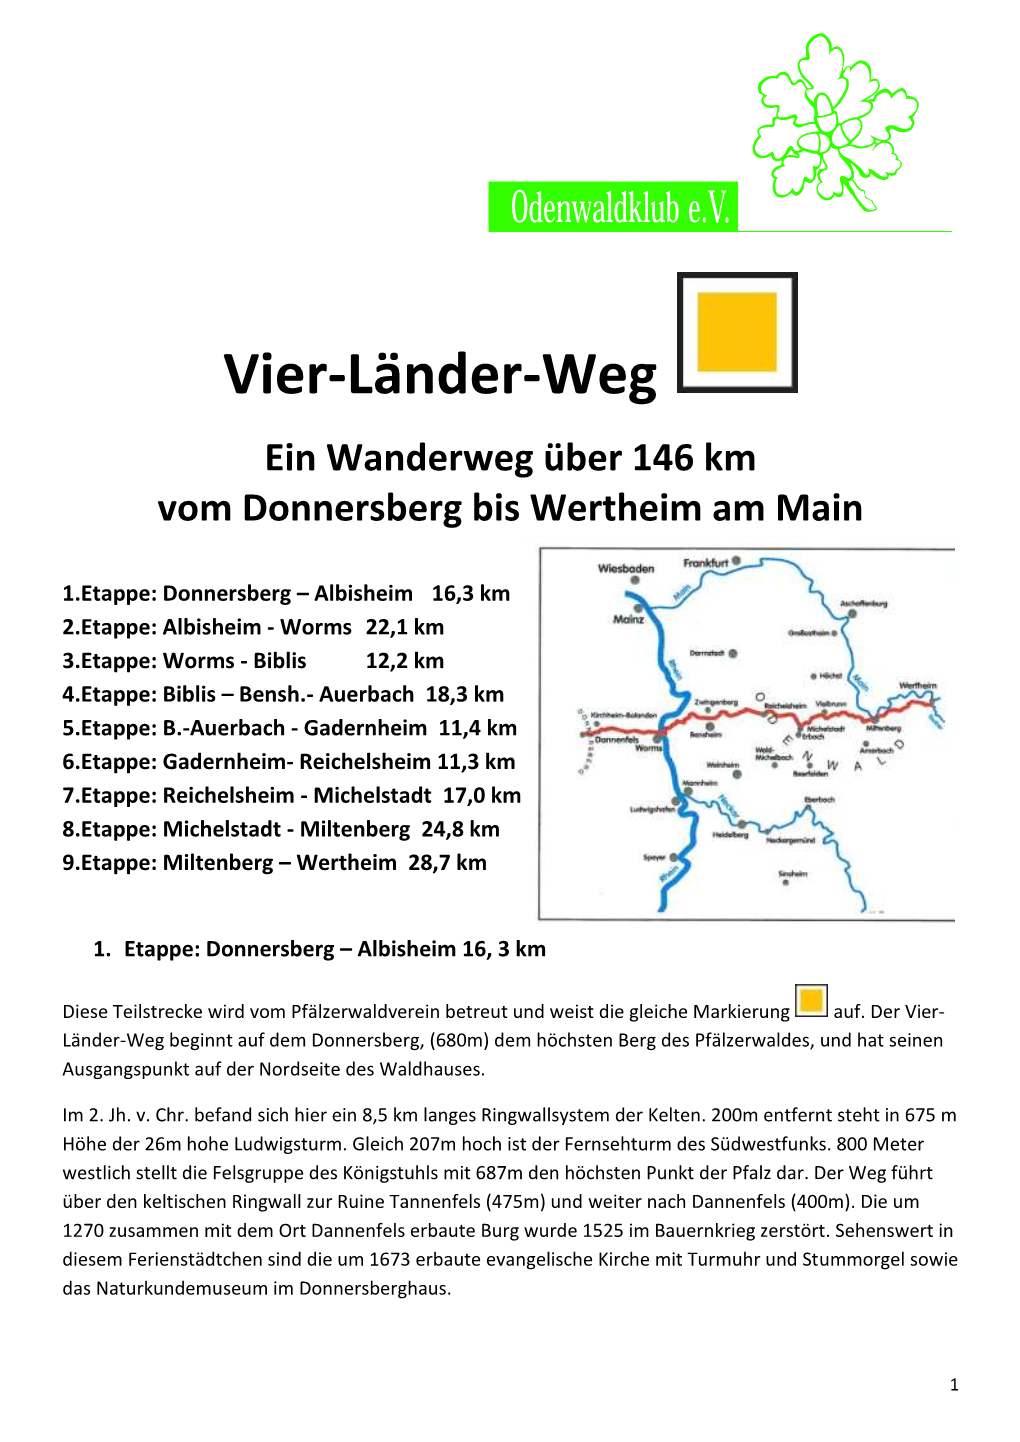 Vier-Länder-Weg Ein Wanderweg Über 146 Km Vom Donnersberg Bis Wertheim Am Main